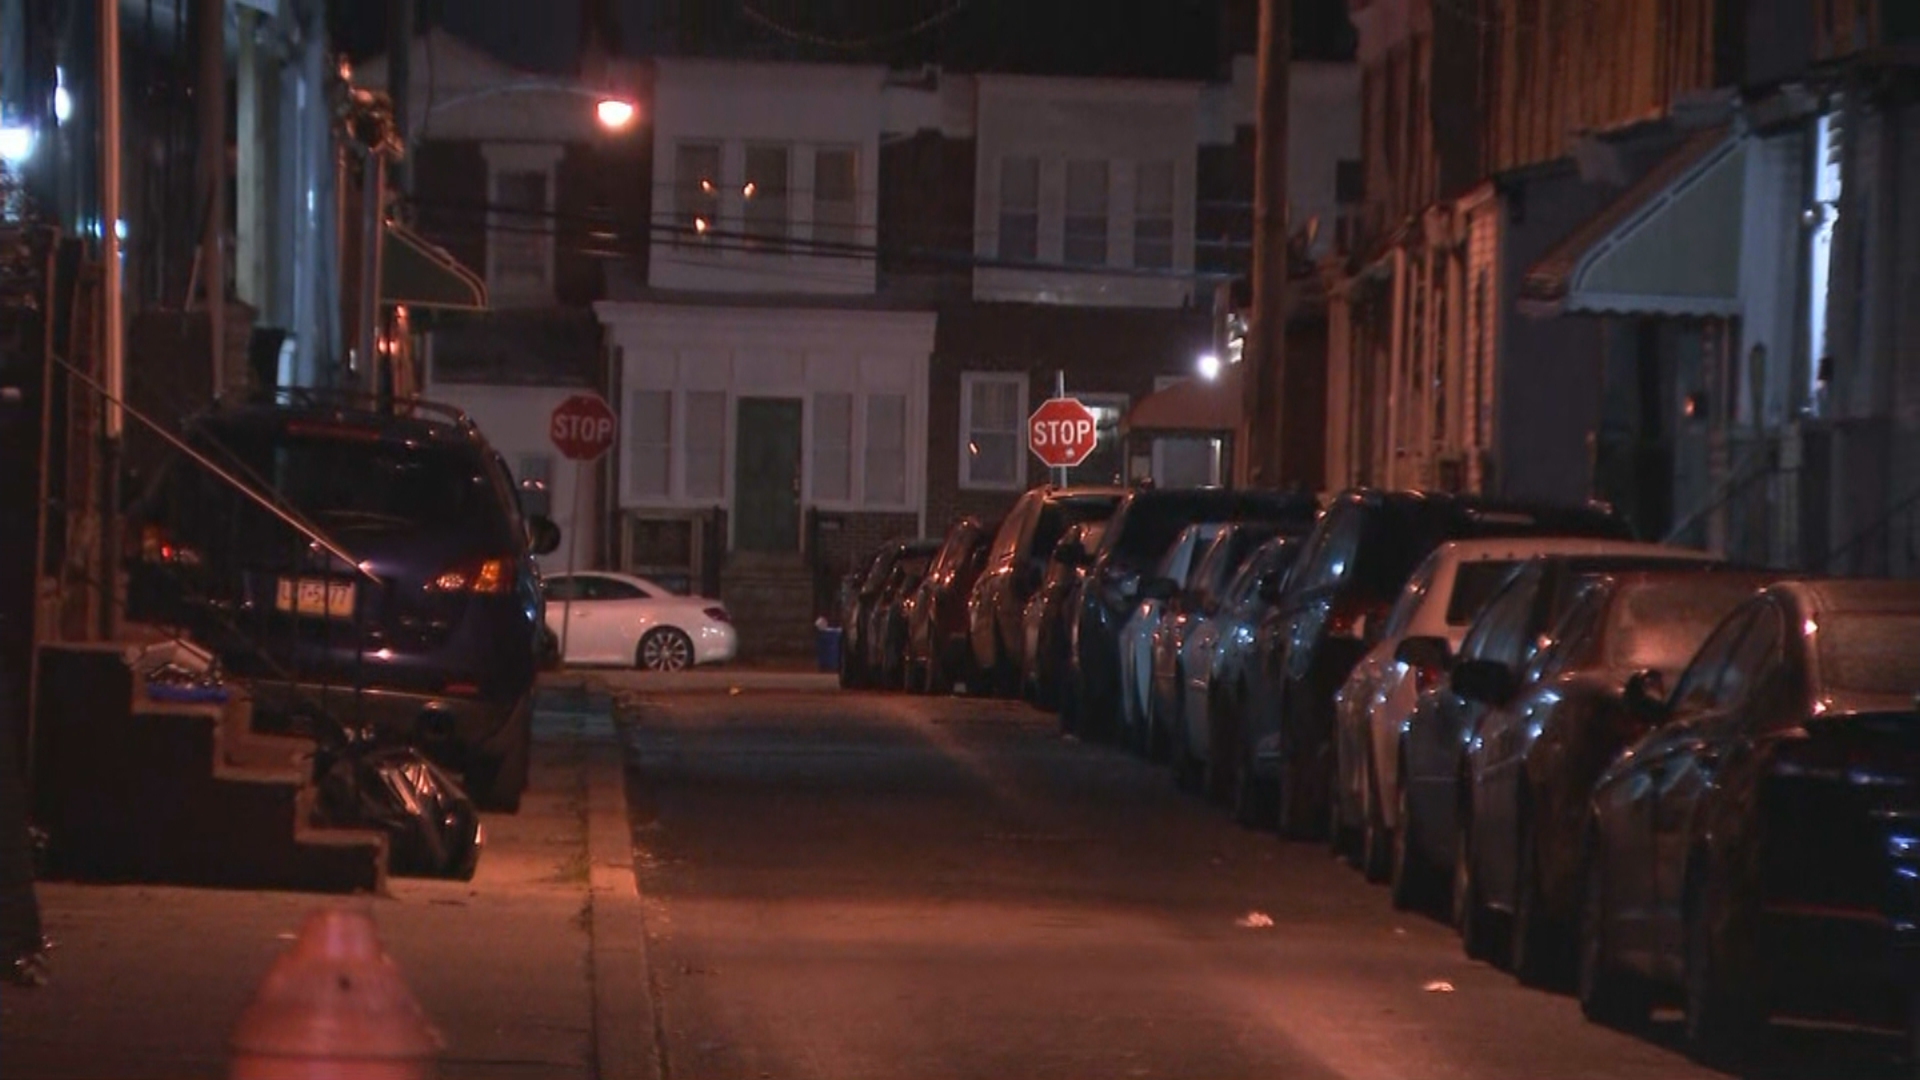 Man Stabbed In Neck In Southwest Philadelphia Stabbing, Police Say